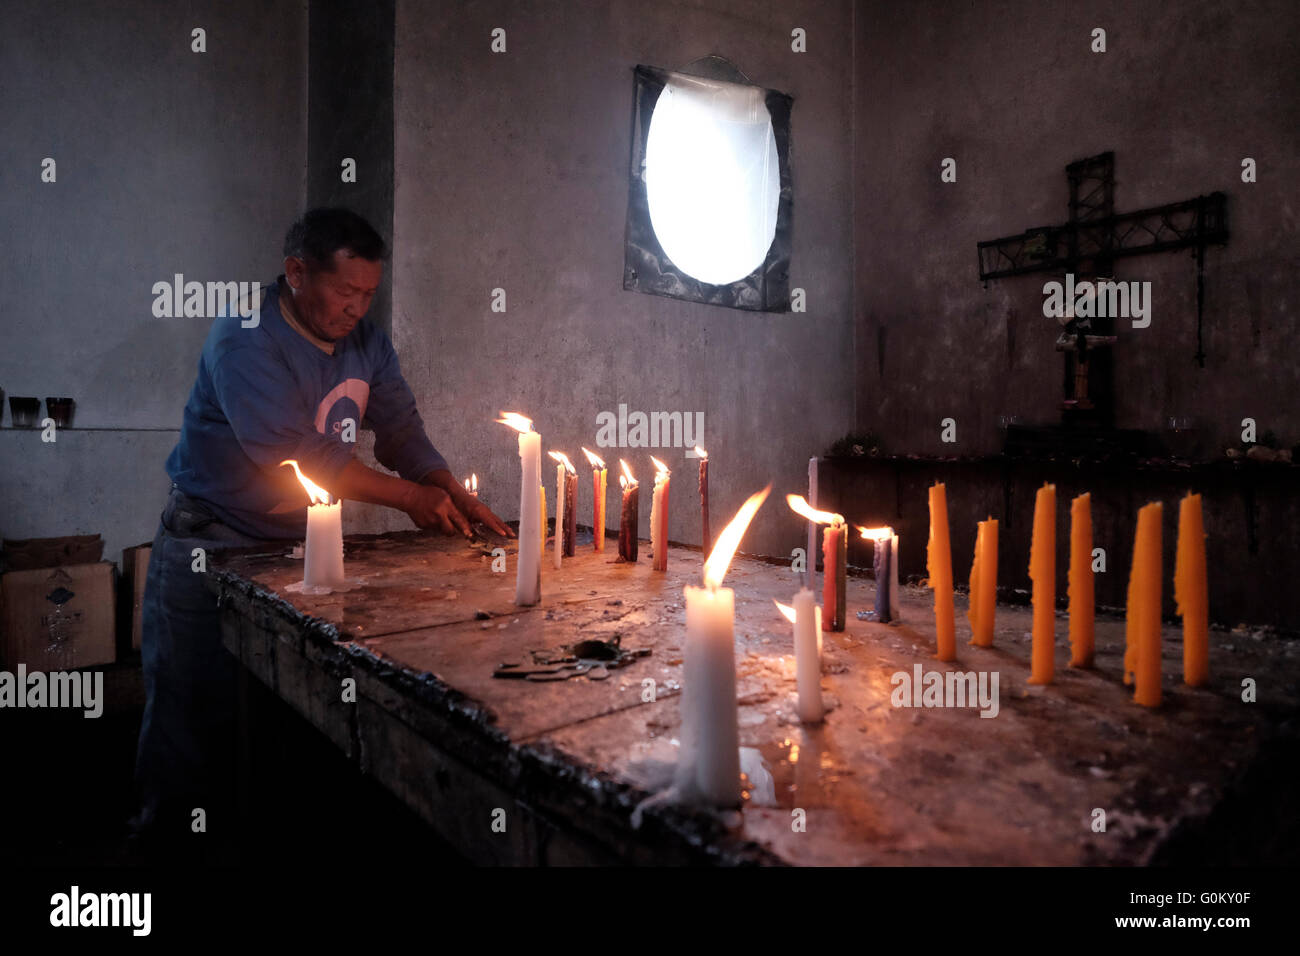 Homme de la région de cire de nettoyage des bougies au cimetière de Chichicastenango également connu sous le nom de Santo Tomás Chichicastenango une ville dans le département de Guatemala El Quiché, connu pour sa culture Maya Kiche traditionnels. Banque D'Images